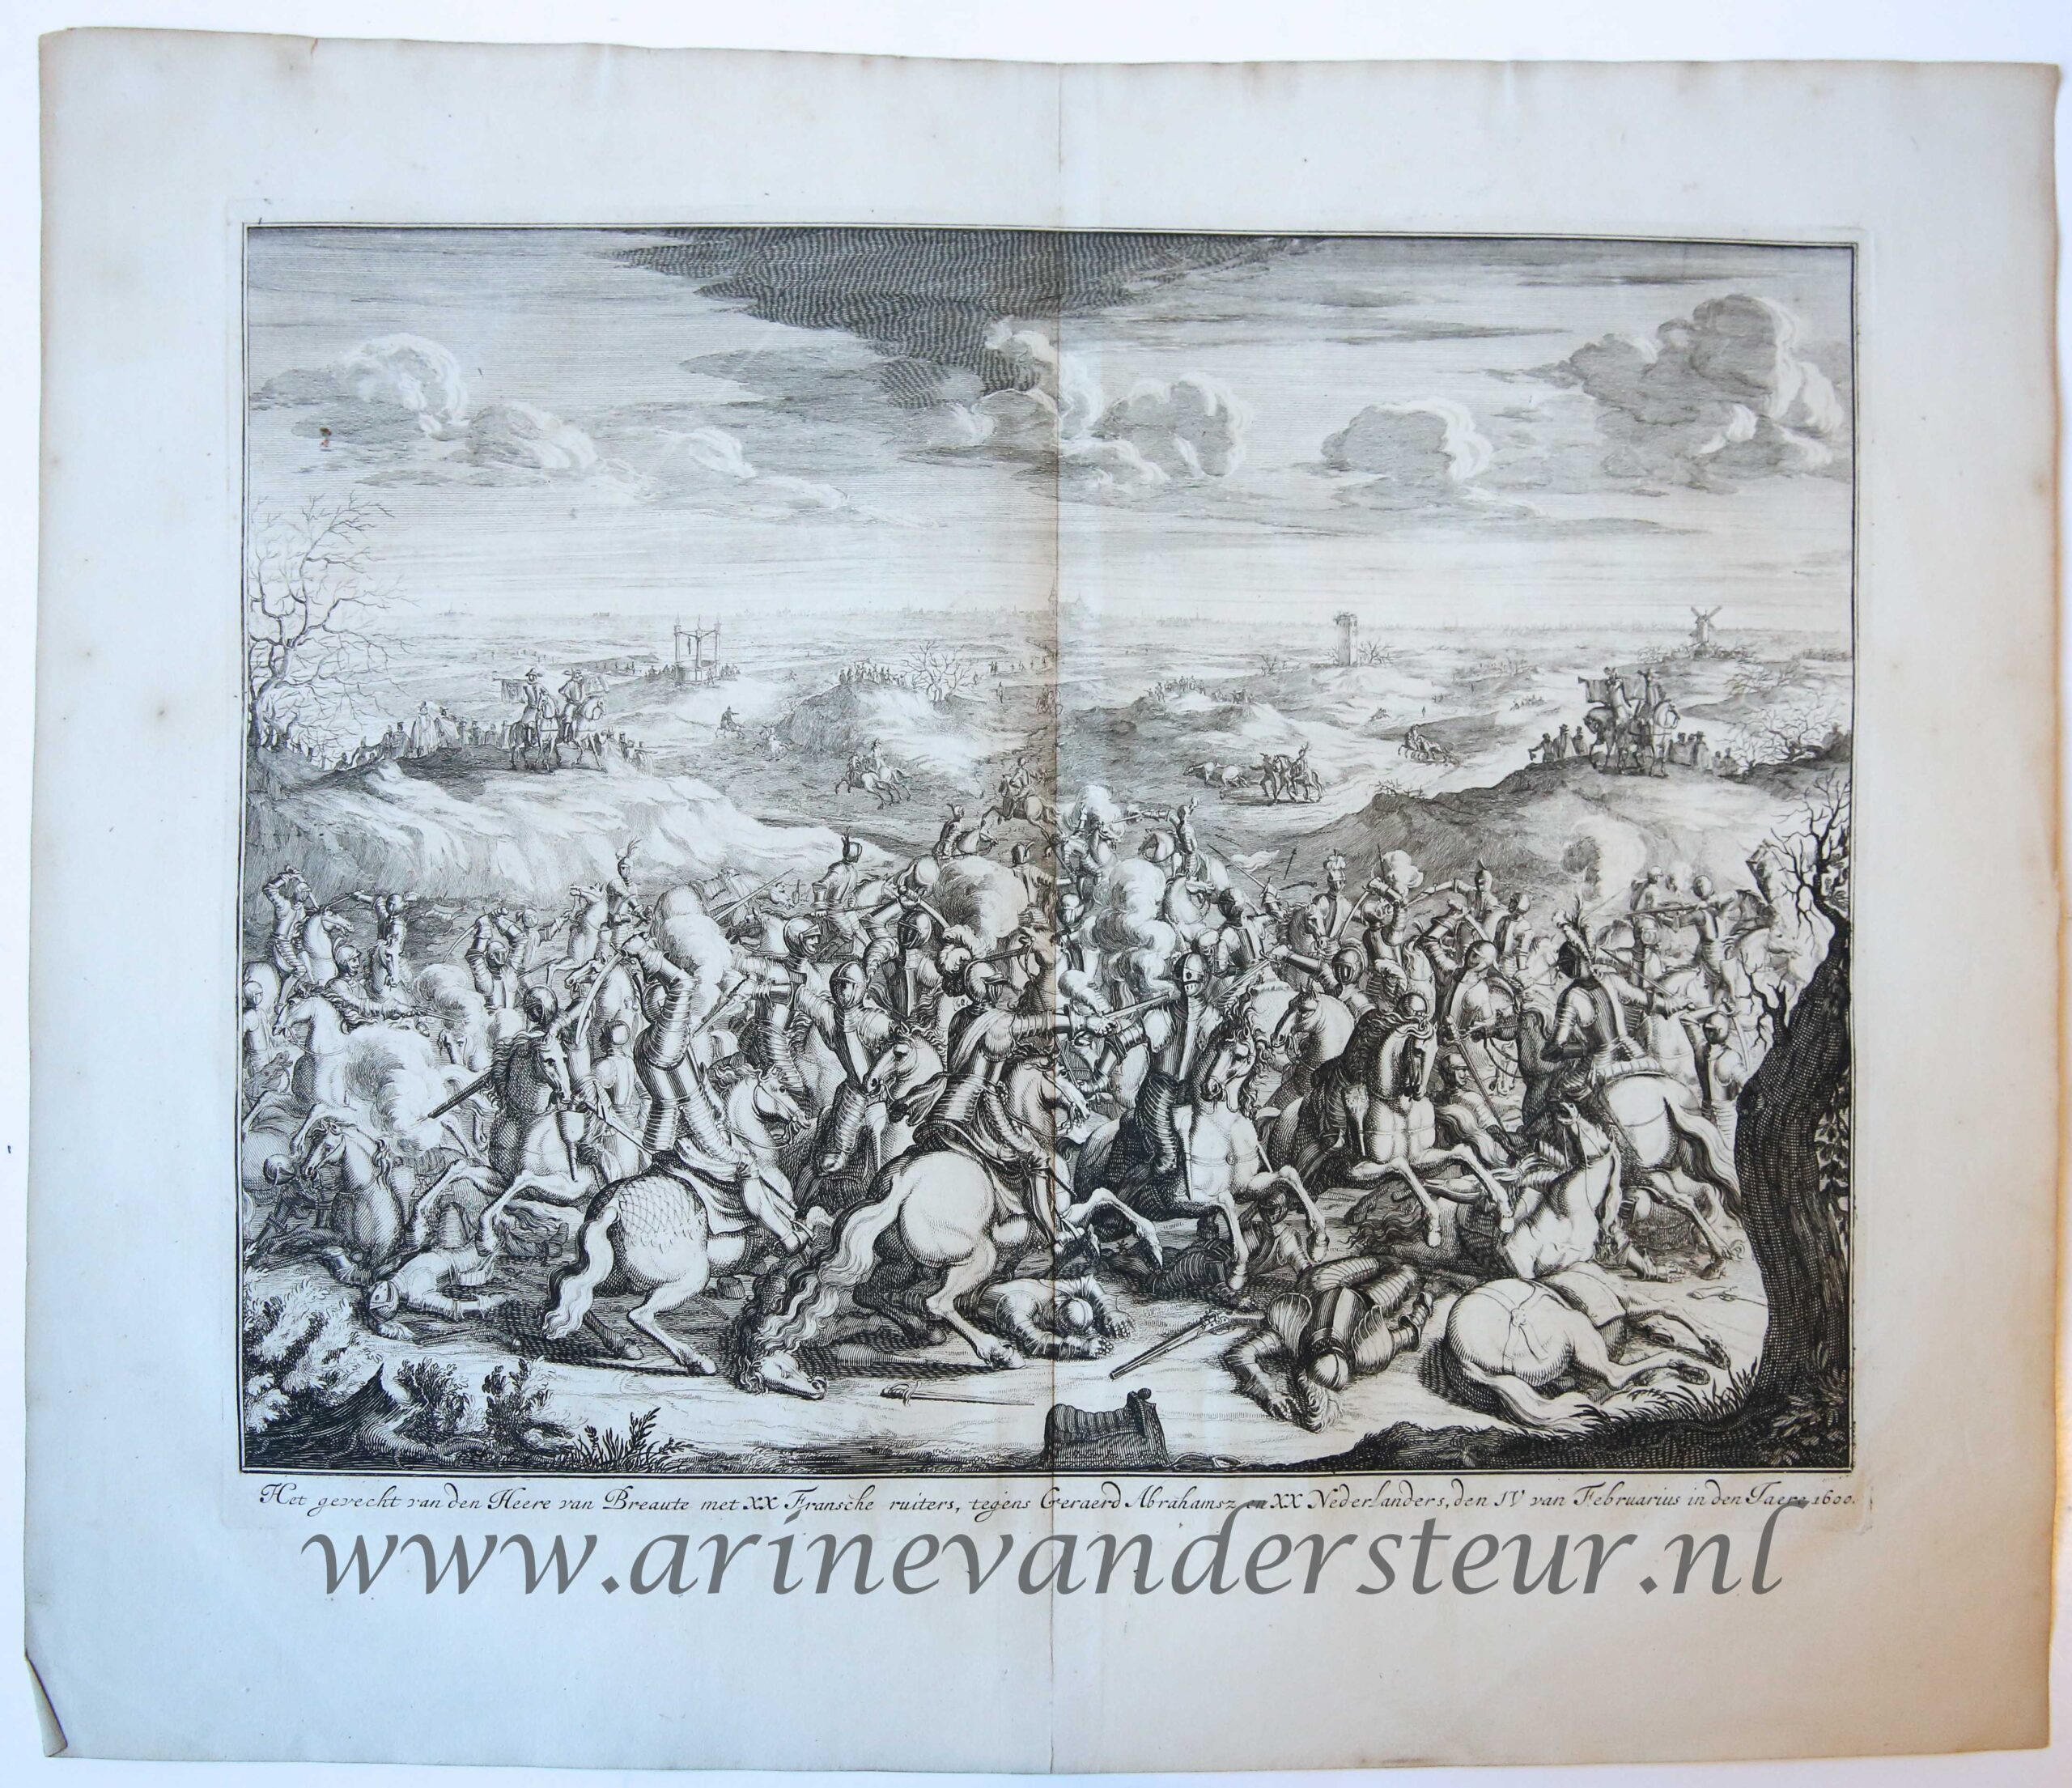 [History print published 1684] 'Het gevecht van den Heere van Breaute met XX Fransche ruiters, tegens Geraerd Abrahamsz en XX Nederlanders'; Battle of Lekkerbeetje, 1600